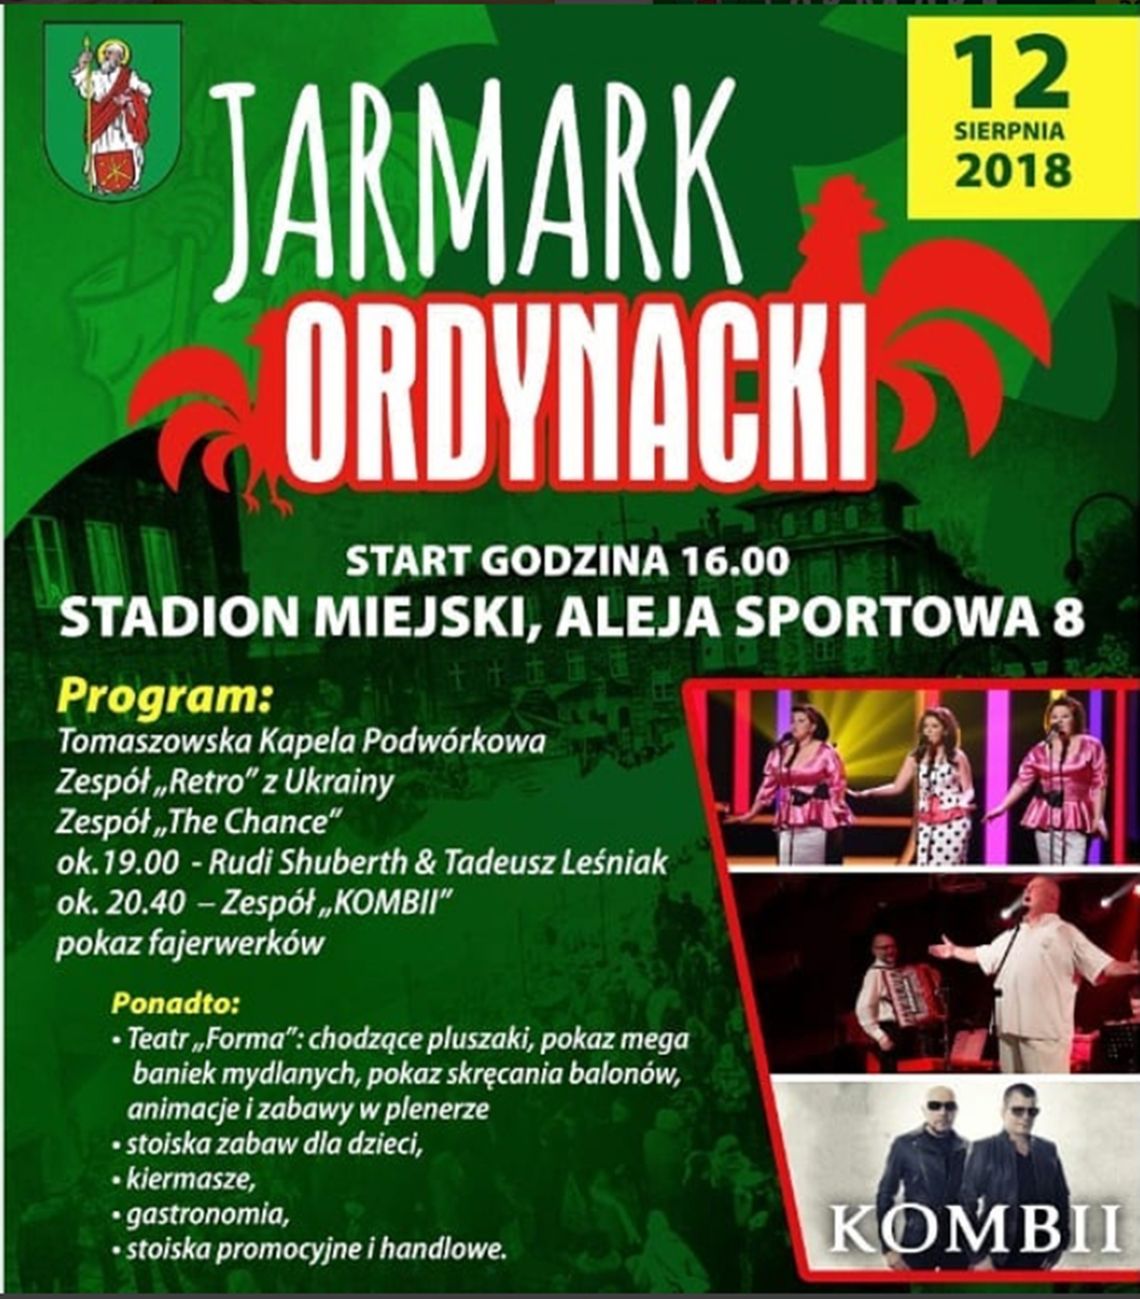 Jarmark Ordynacki w Tomaszowie Lubelskim